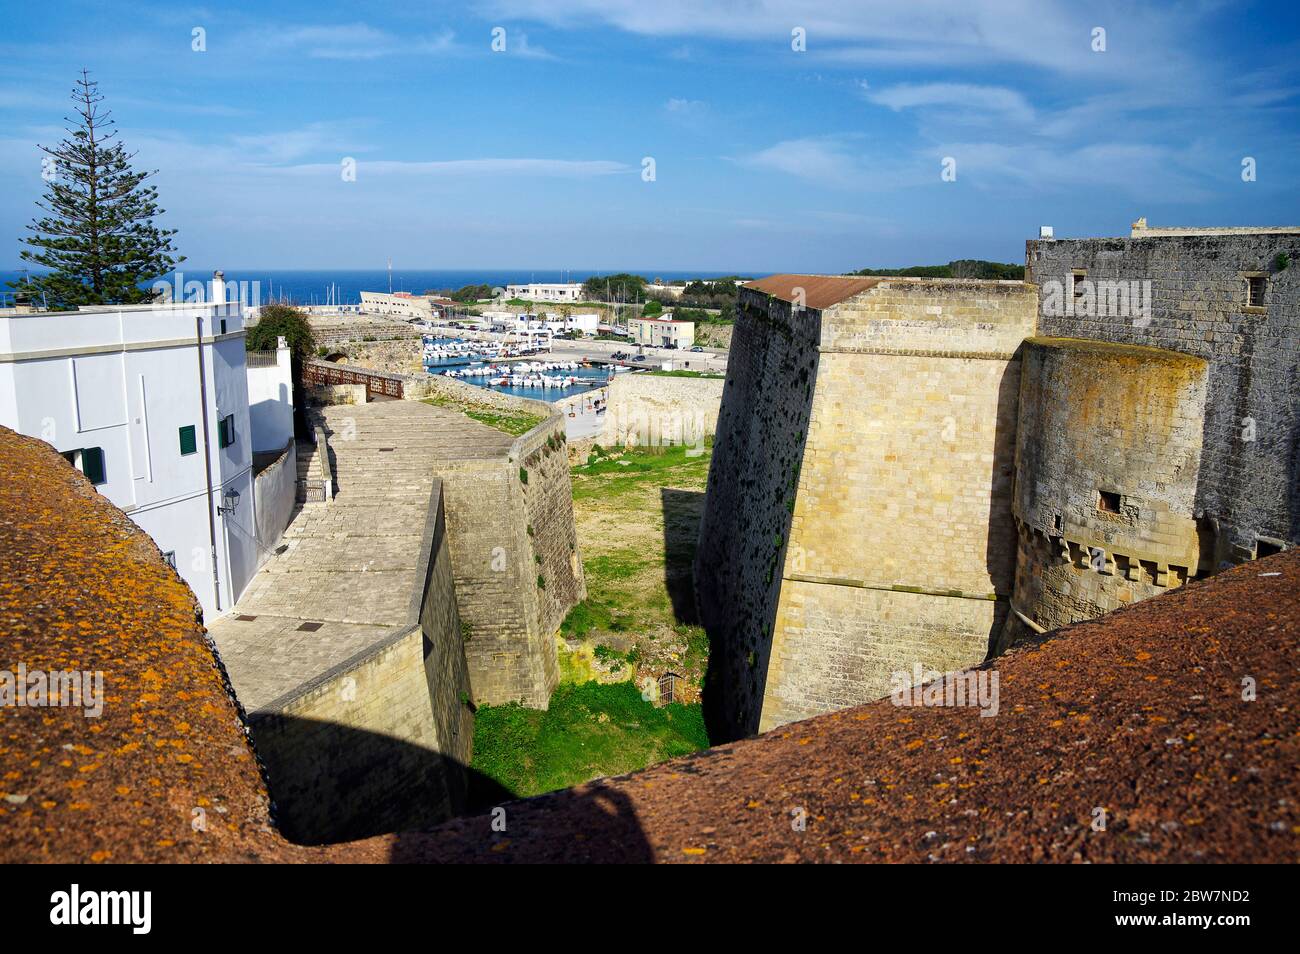 OTRANTO, APULIA, ITALIA - 30 DE MARZO de 2018: Una vista magnífica de la ciudad de Otrante desde las murallas del Castillo Aragonés medieval en Otranto, Apulia, Italia Foto de stock